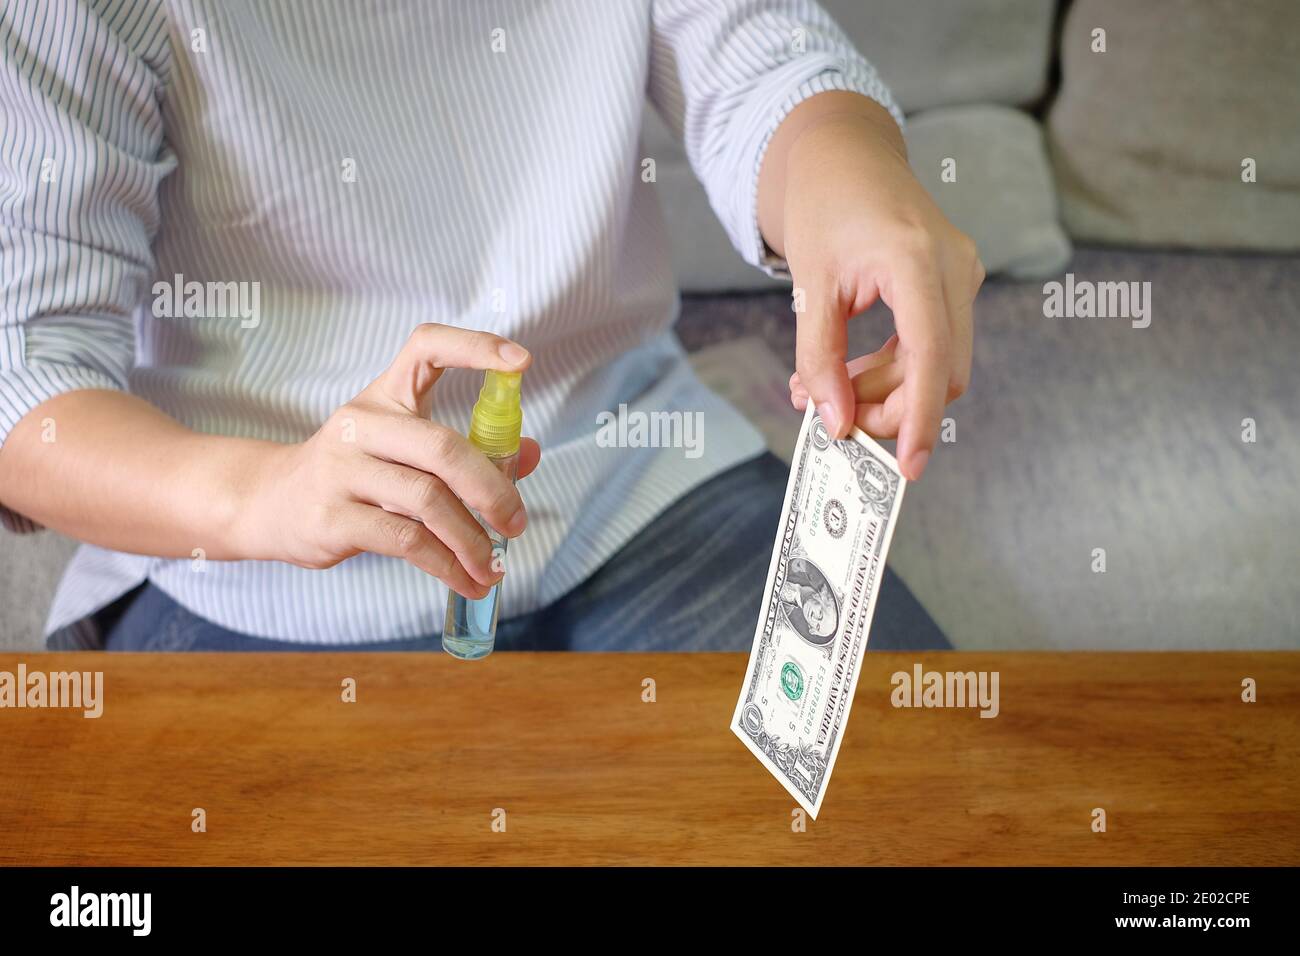 Une femme asiatique avec un masque facial désinfecte ses billets de banque aux États-Unis à l'aide d'alcool spray. Banque D'Images